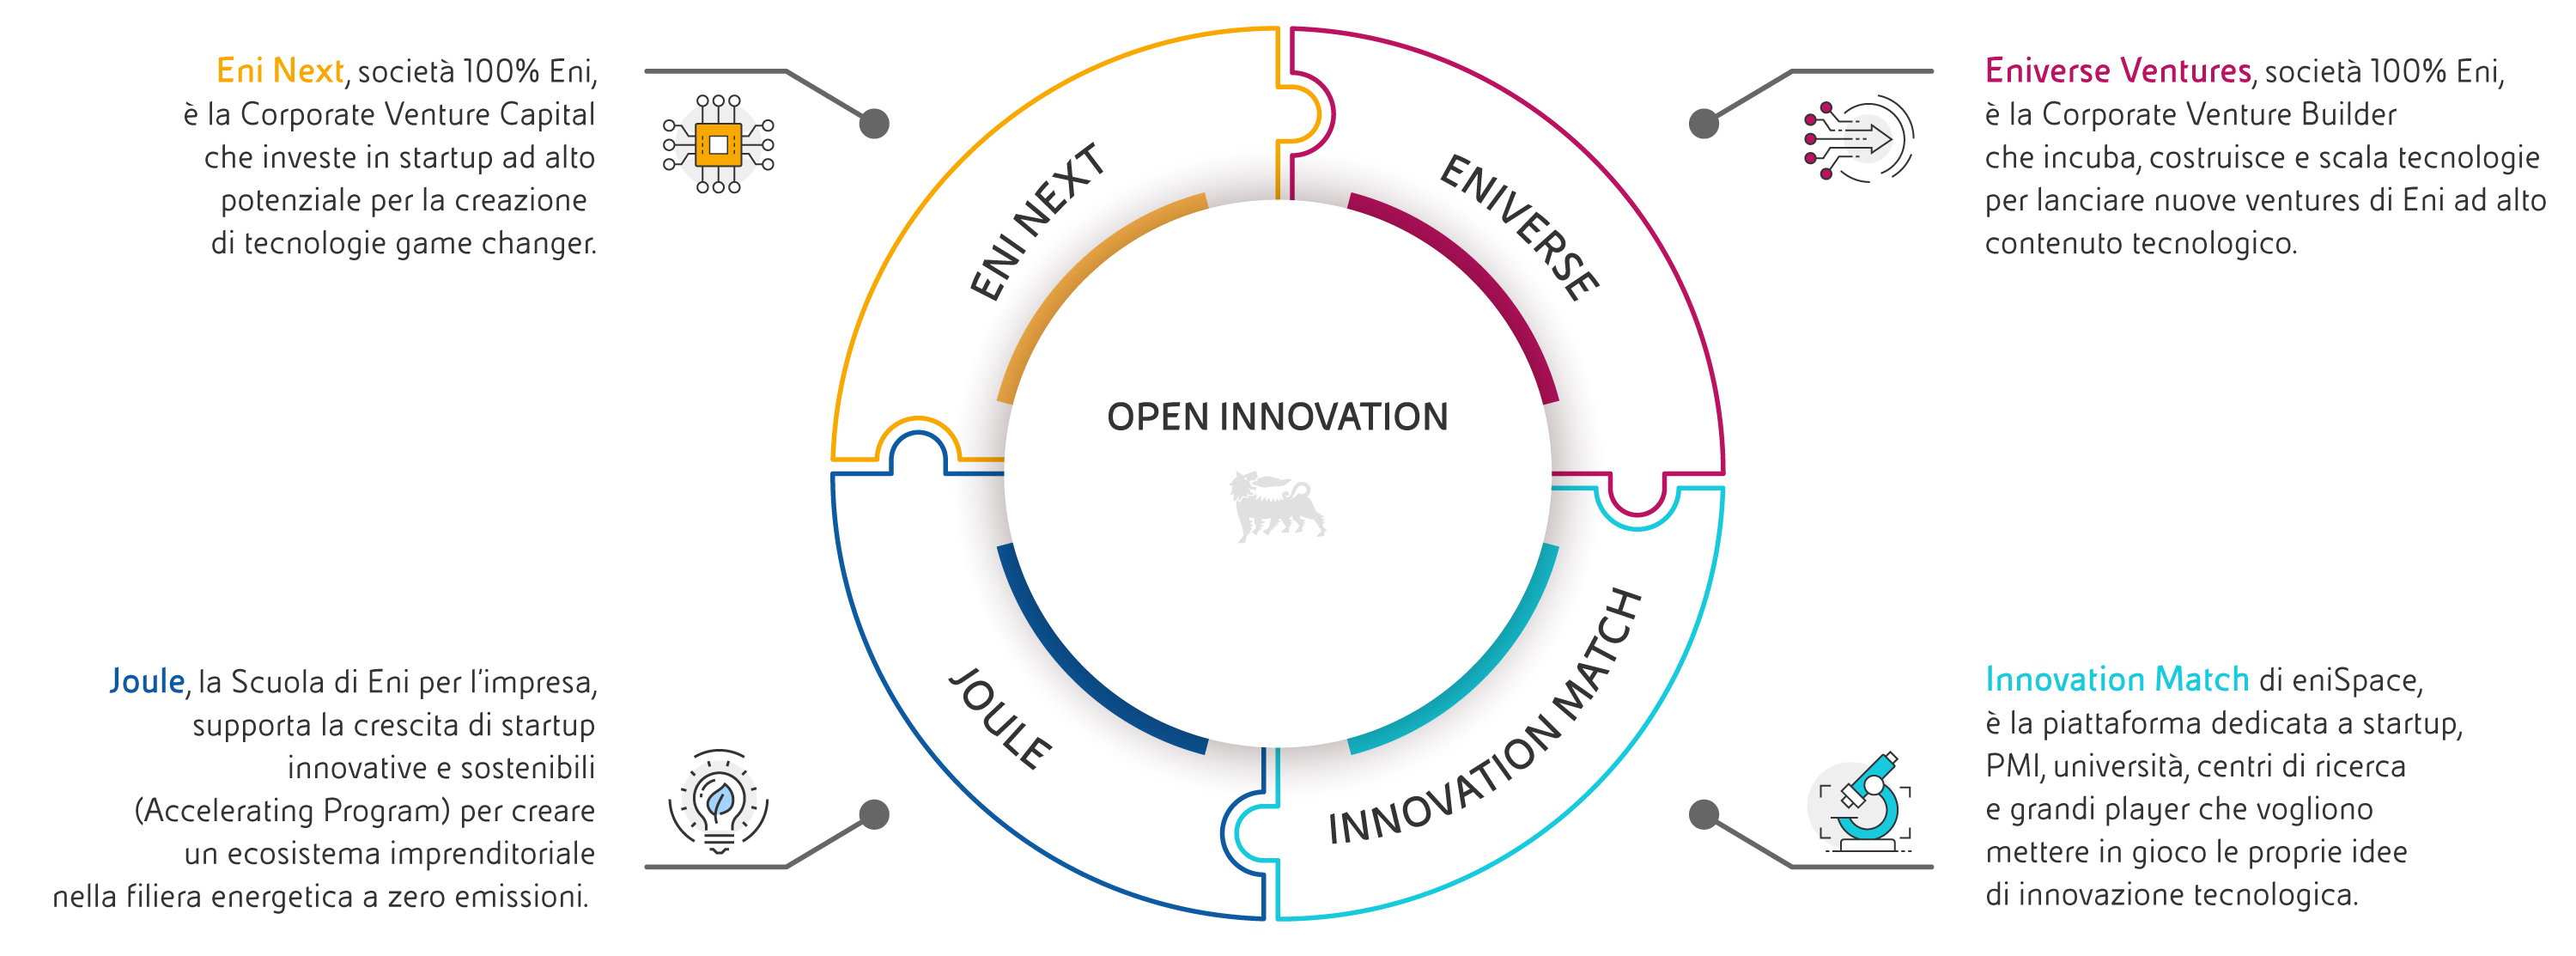 open-innovation-1-circular-infographics-desktop-ita.jpg